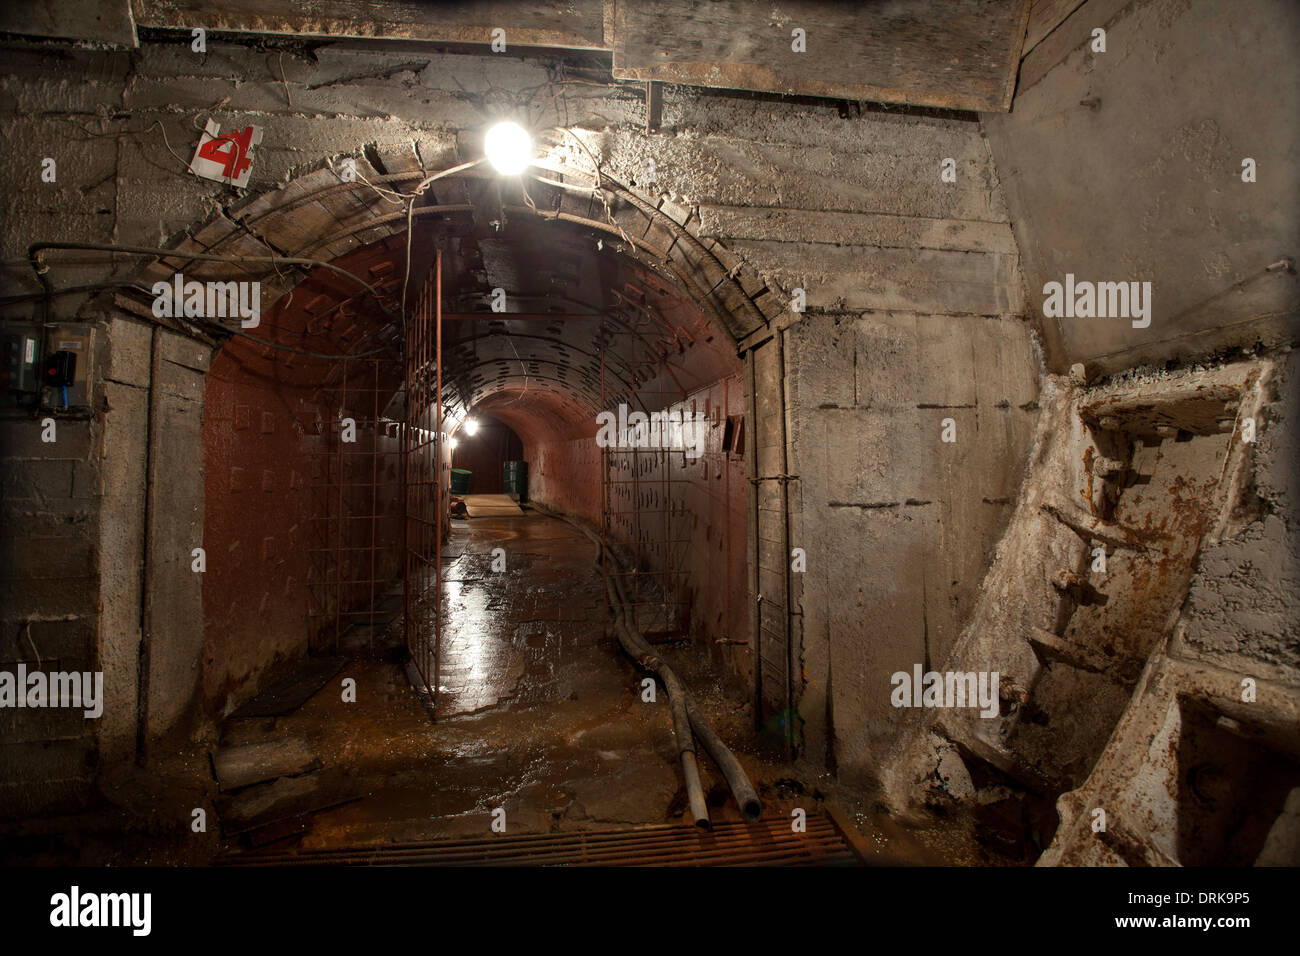 Taganski protégés Point Commande nuclear bunker Moscou guerre froide Banque D'Images